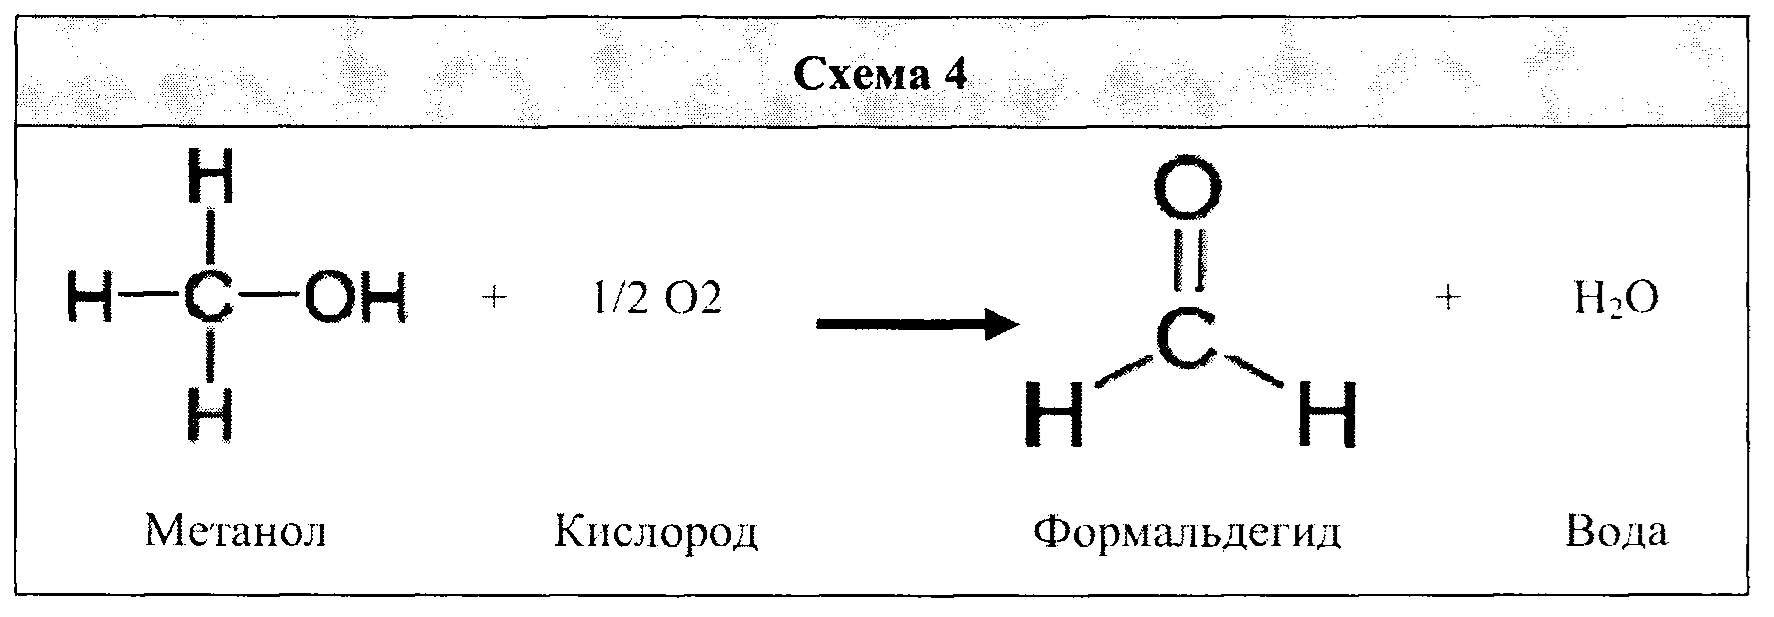 C2h4 продукт реакции. Ацетальдегид и метанол. Ацетальдегид и вода. Технологическая схема формальдегида и ацетальдегида. Ацетальдегид и метанол реакция.